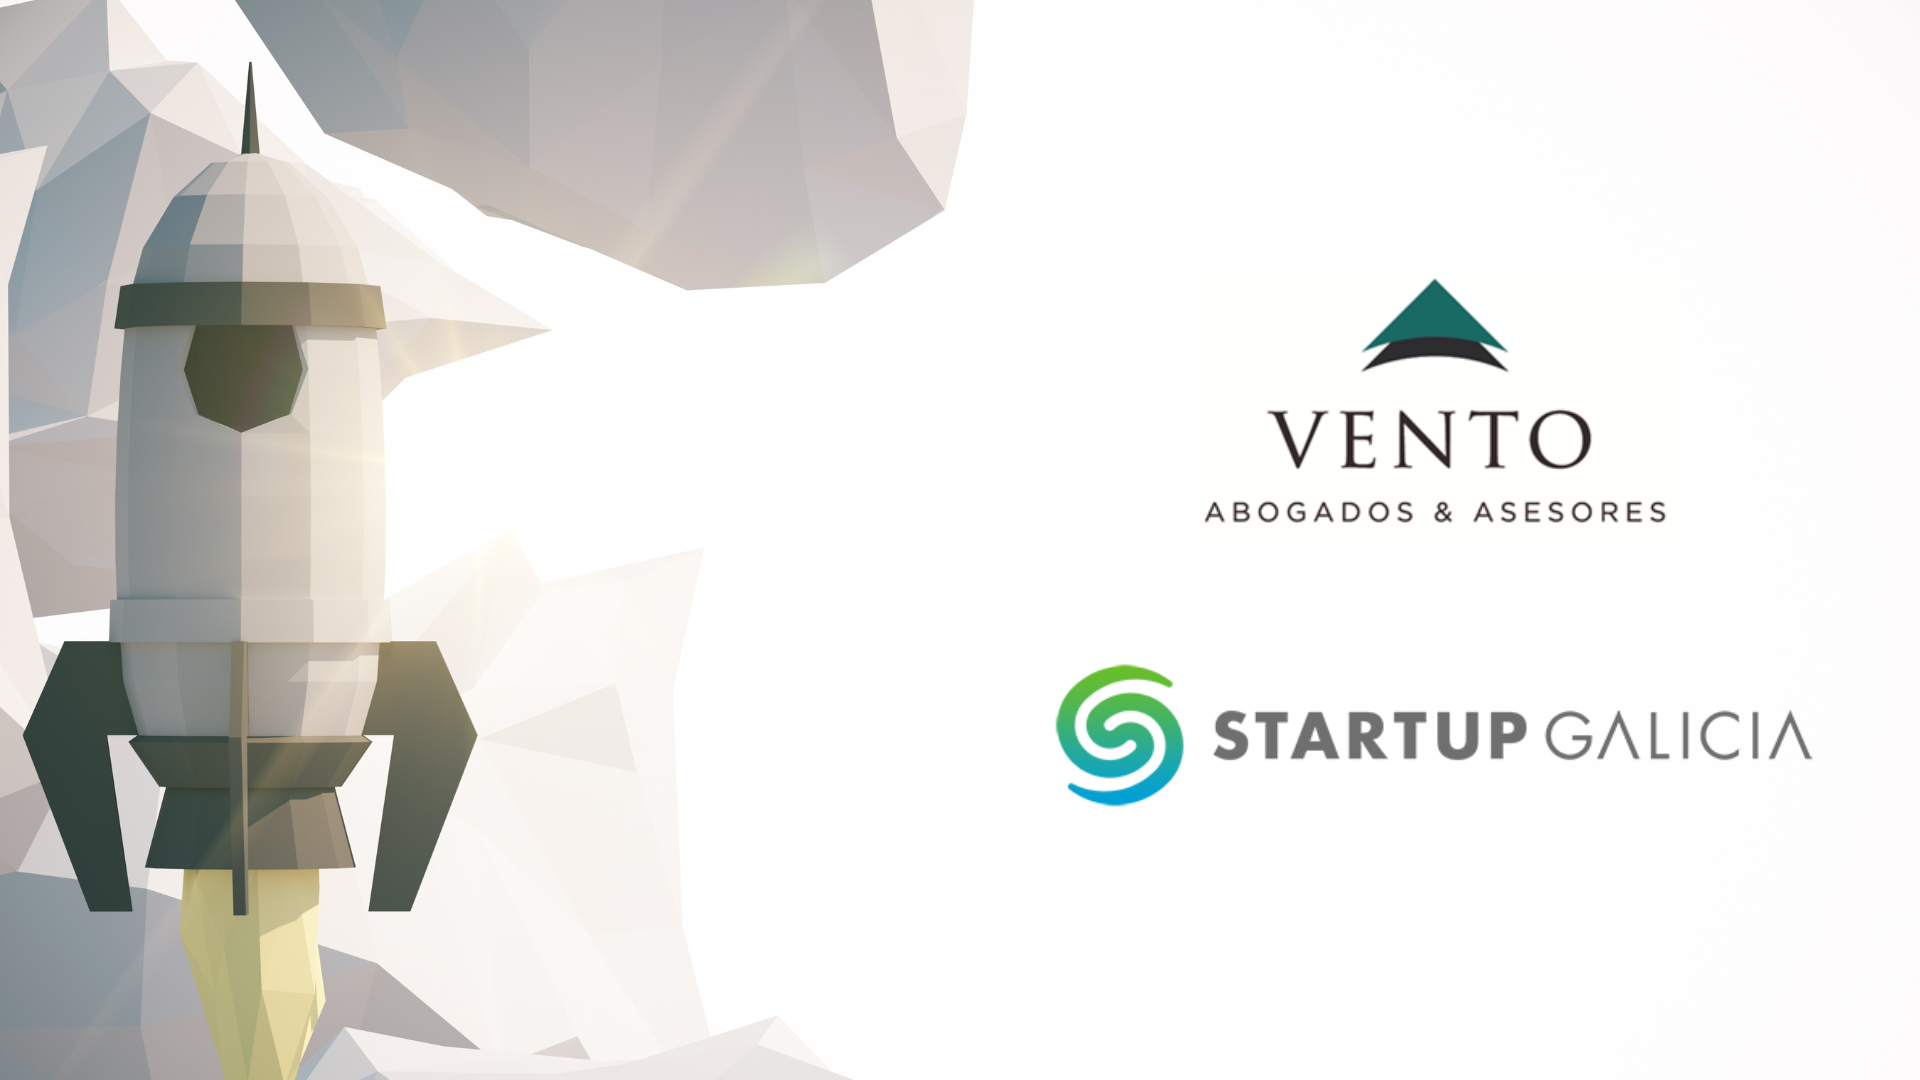 Vento y Startup Galicia van a impulsar el crecimiento de los proyectos innovadores gallegos